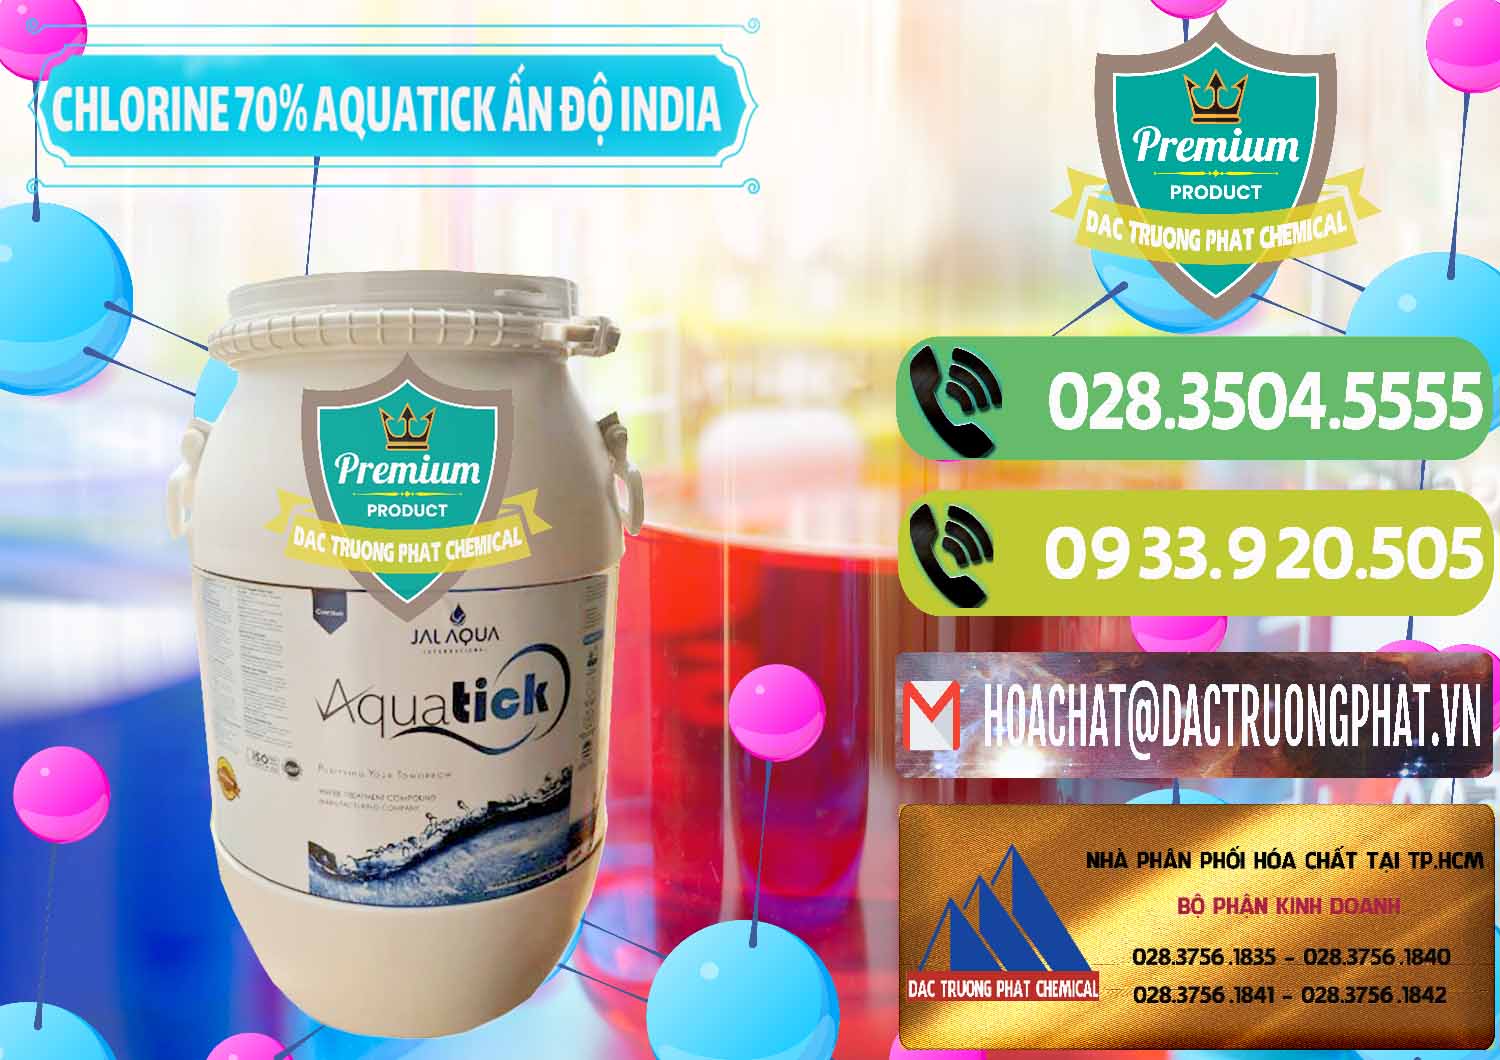 Nơi nhập khẩu _ bán Chlorine – Clorin 70% Aquatick Jal Aqua Ấn Độ India - 0215 - Phân phối & cung cấp hóa chất tại TP.HCM - hoachatmientay.vn